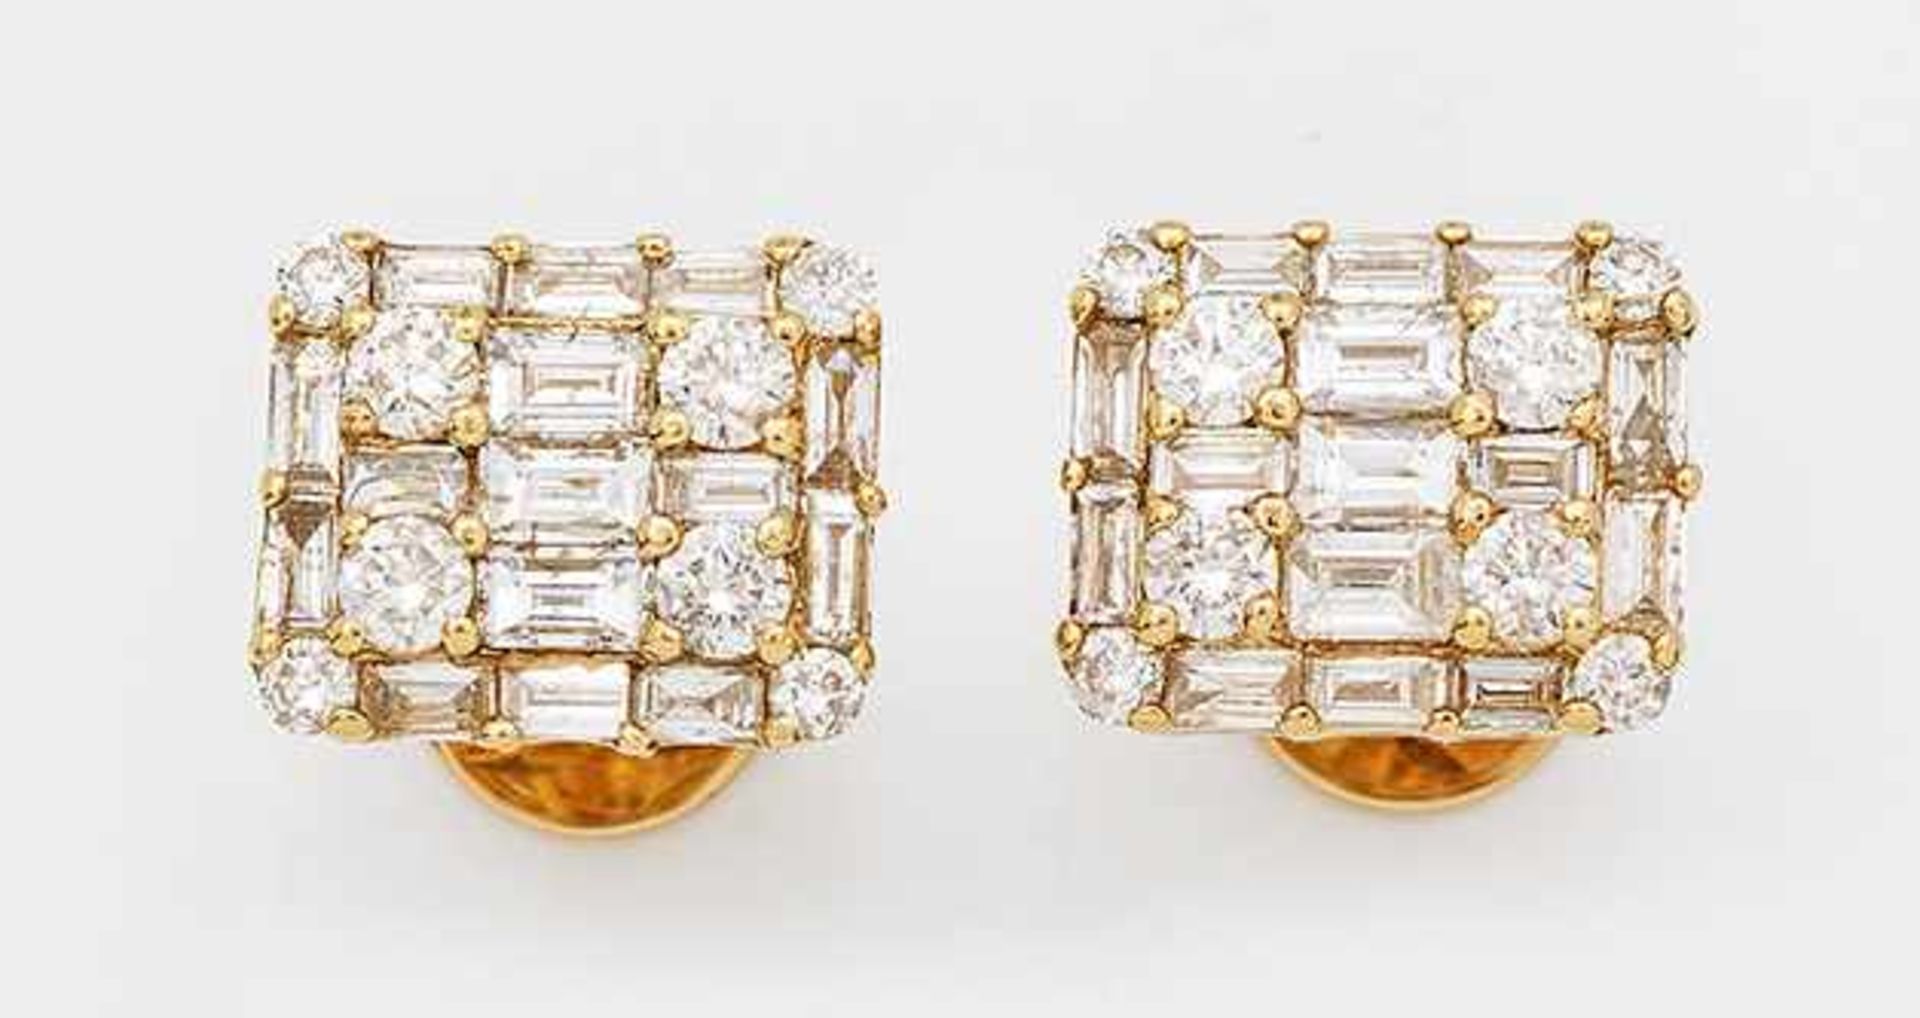 Paar repräsentative DiamantohrringeGelbgold, gest. 750. Schauseitig besetzt mit Brillanten und